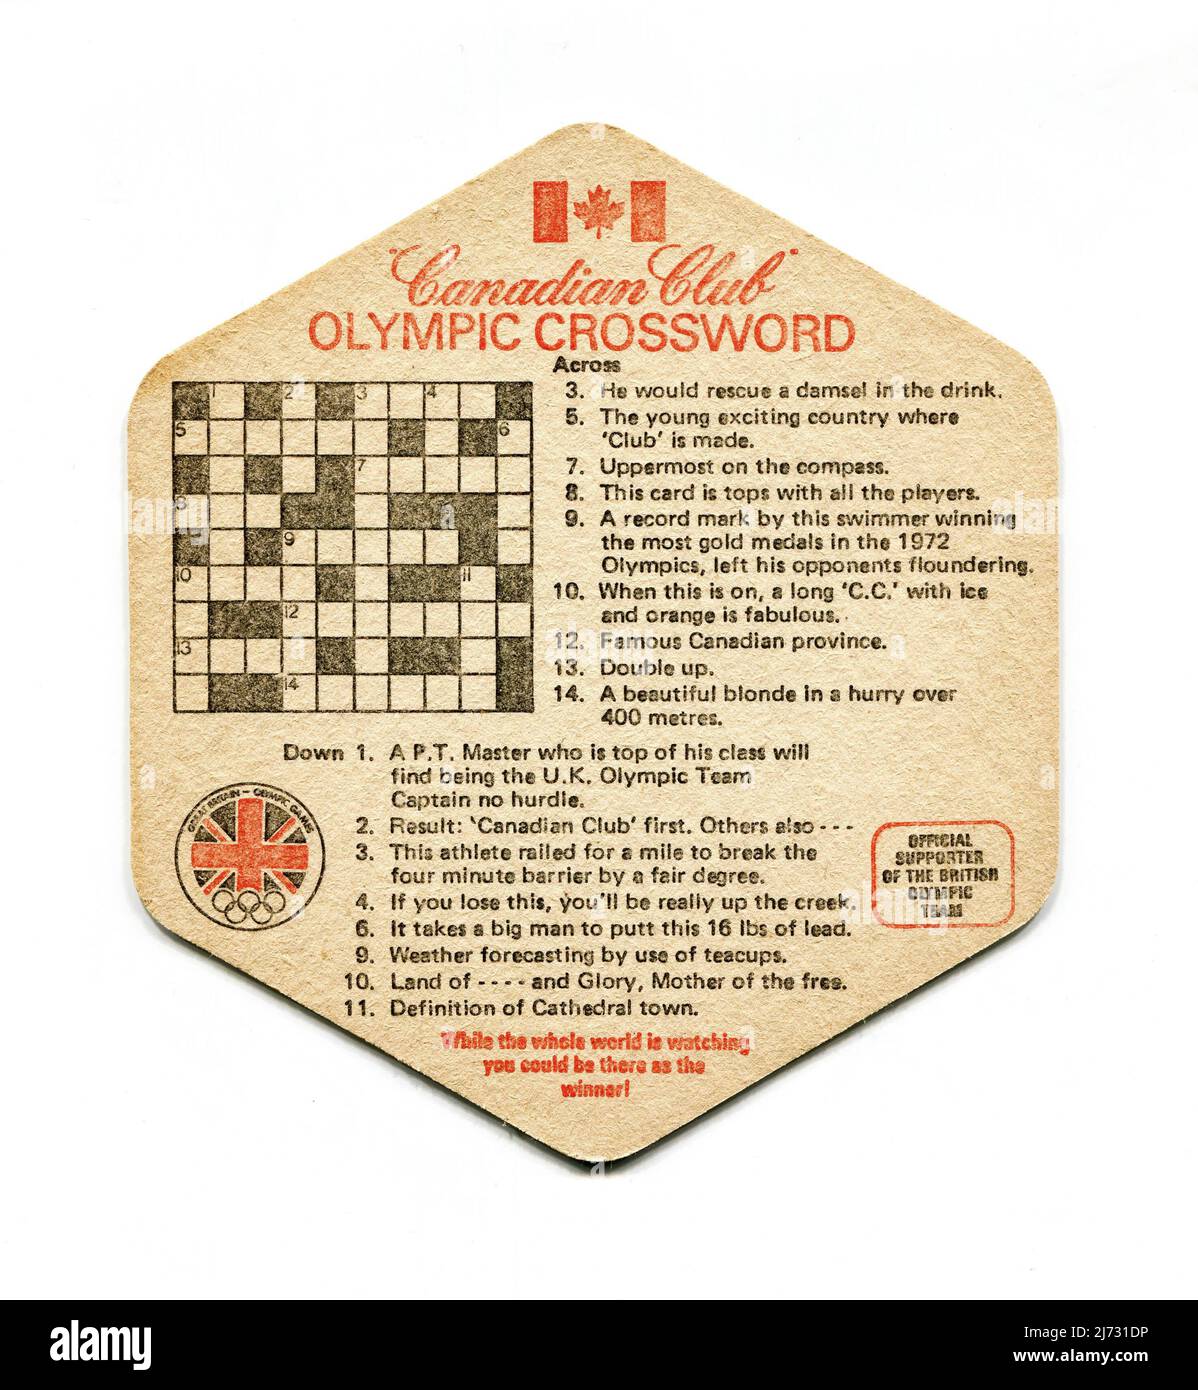 Un manto di birra vintage prodotto come articolo promozionale per il whisky Canadian Club, pubblicizzando la sponsorizzazione della squadra olimpica britannica in vista dei Giochi Olimpici estivi di Montreal del 1976. Il disegno incorpora un puzzle di parola incrociata. Foto Stock